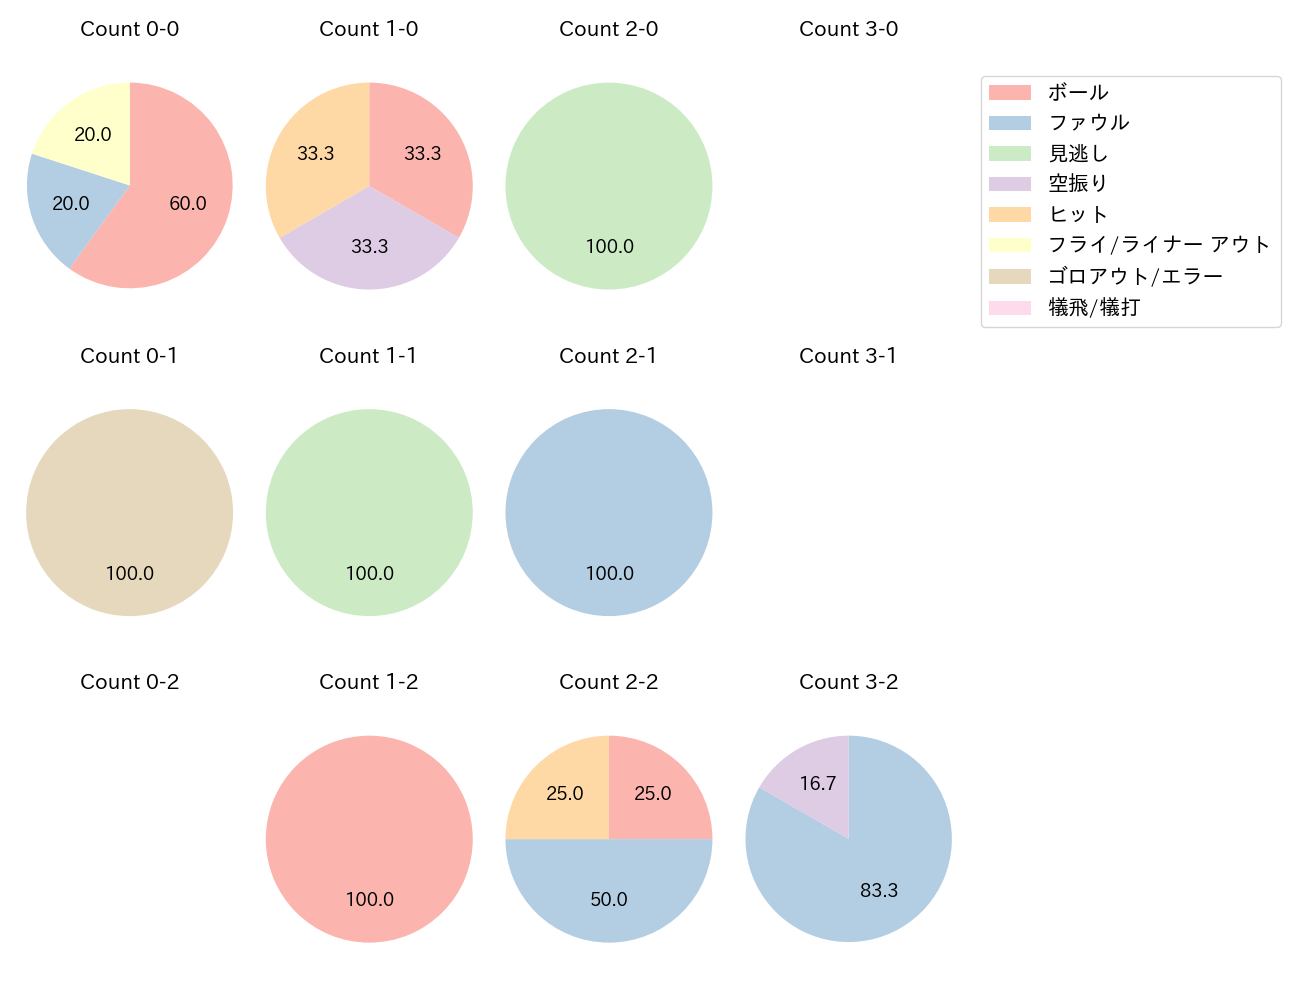 加藤 翔平の球数分布(2022年7月)